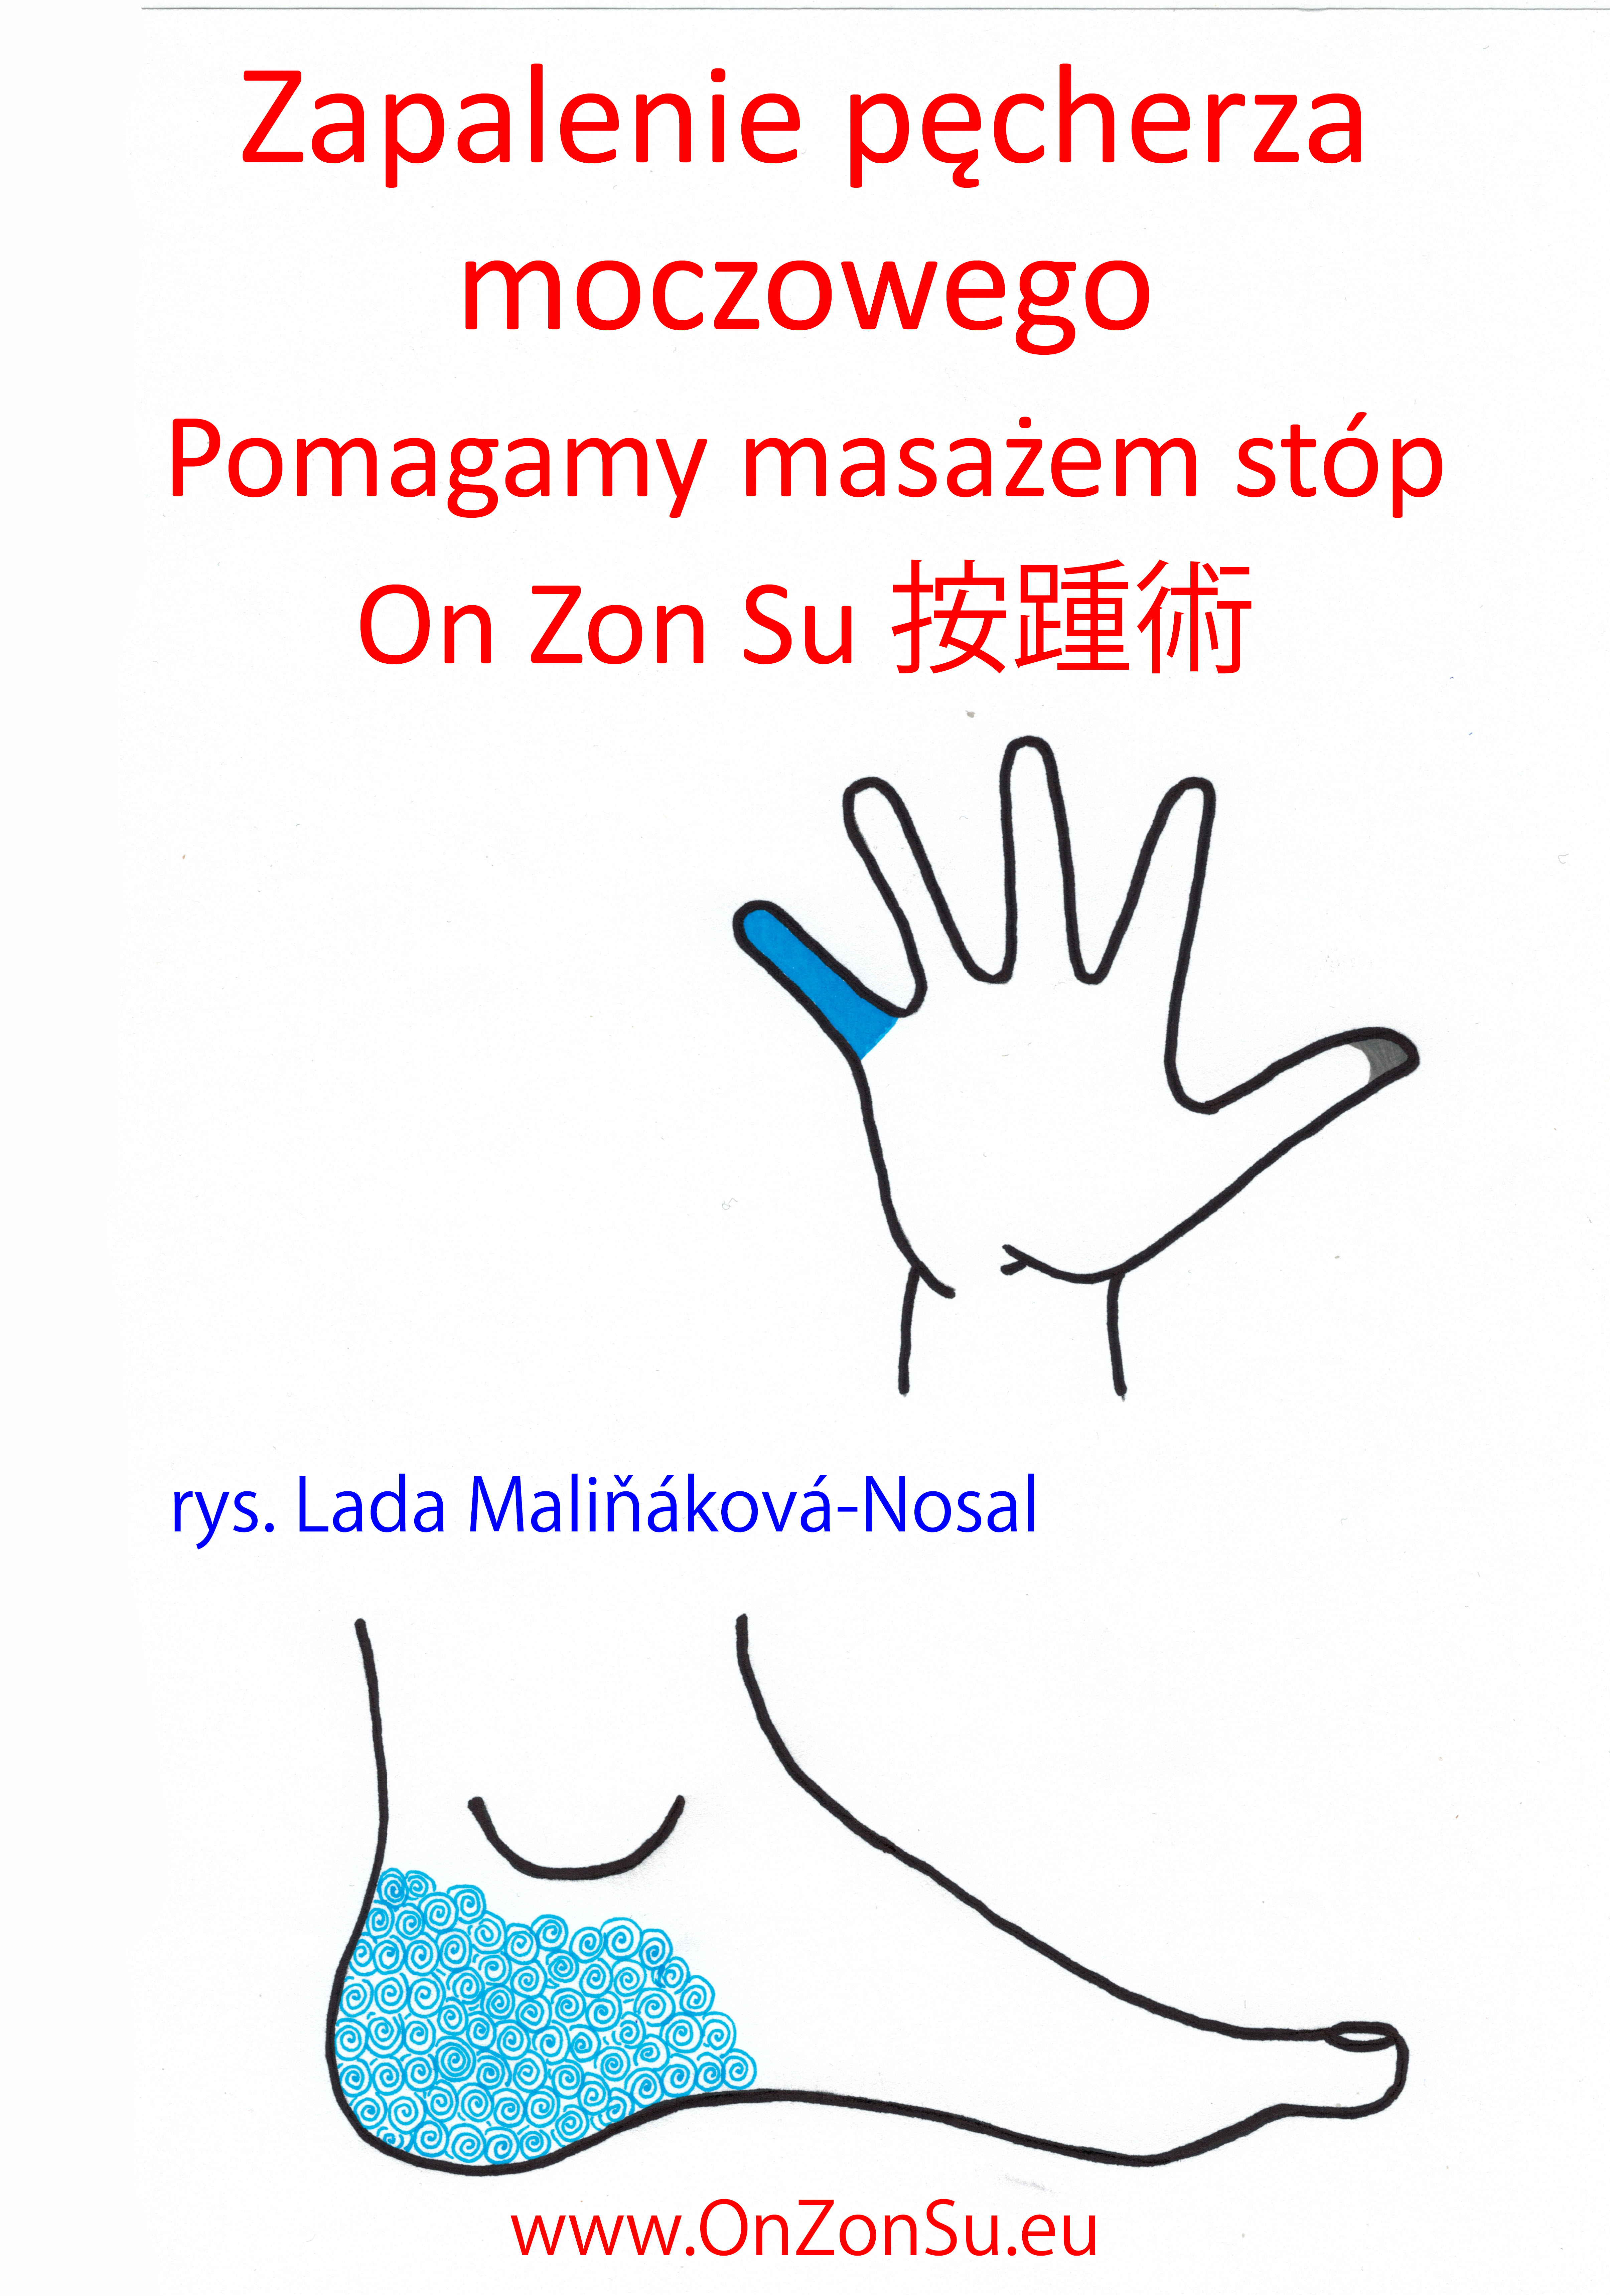 Kurs masażu stóp On Zon Su, Szkolenia refleksologii stóp - Zapalenie pęcherza moczowego MEM.jpg